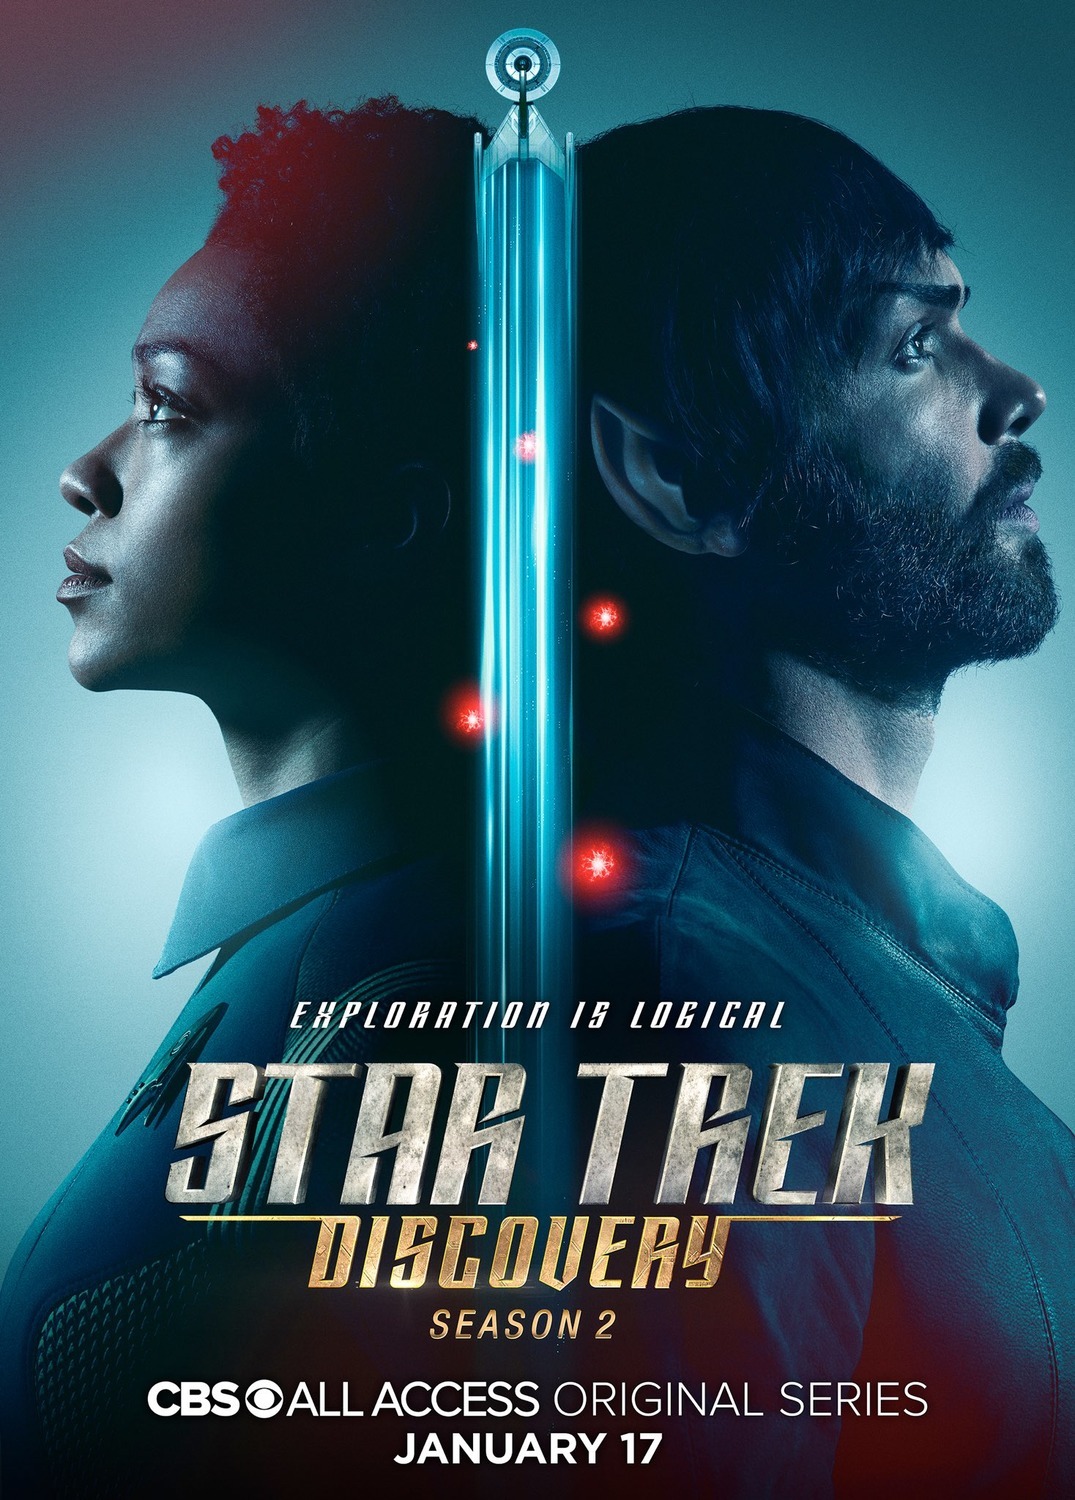 ดูหนังออนไลน์ฟรี Star Trek Discovery Season 2 EP.14 สตาร์ เทรค ดิสคัฟเวอรี่ ซีซั่นที่ 2 ตอนที่ 14